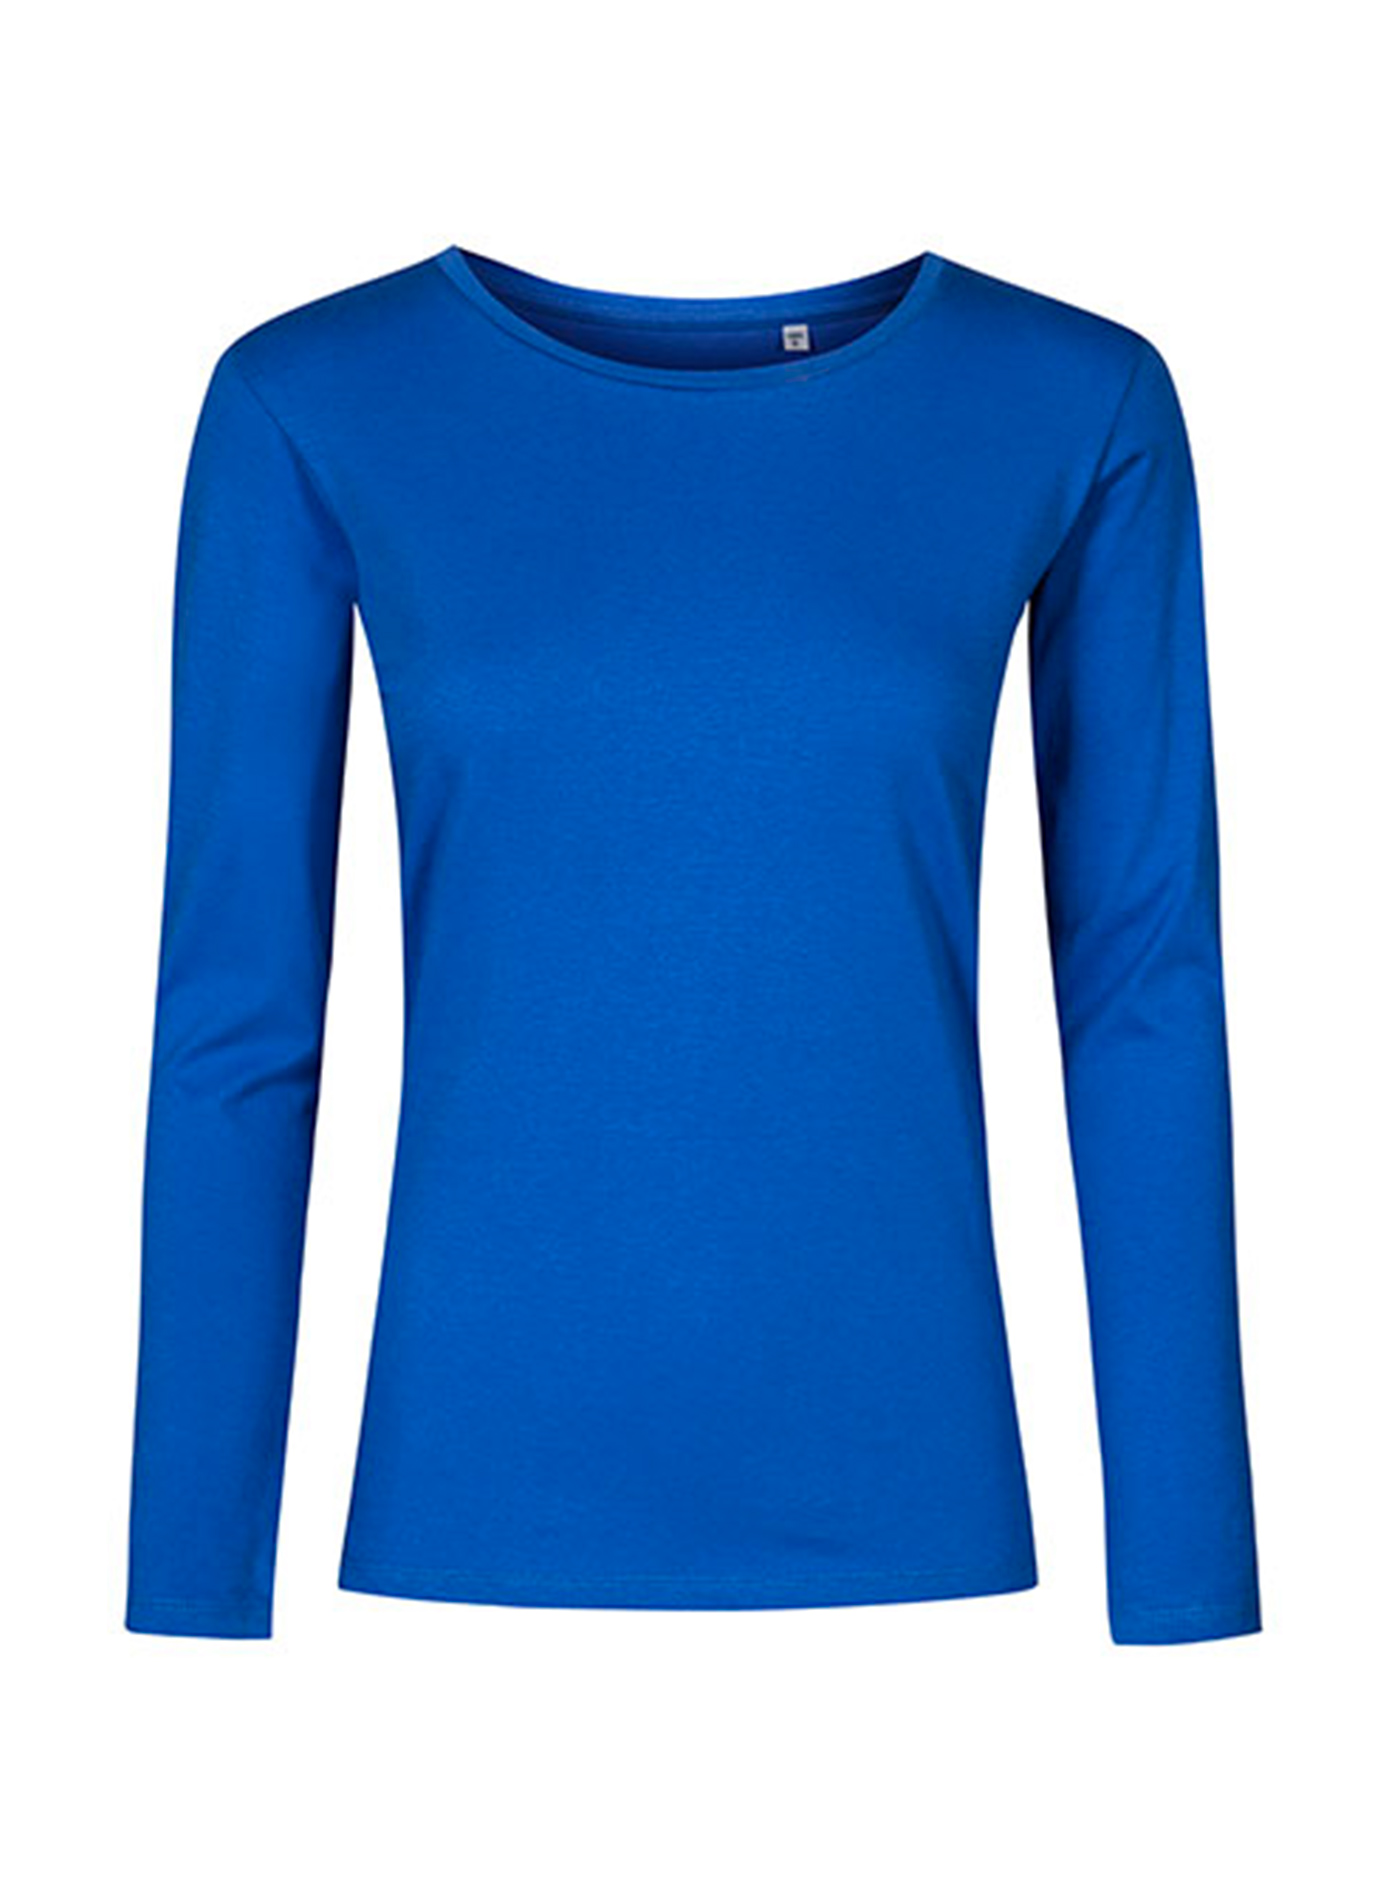 Dámské tričko s dlouhým rukávem s kulatým výstřihem Promodoro - Kobaltově modrá L